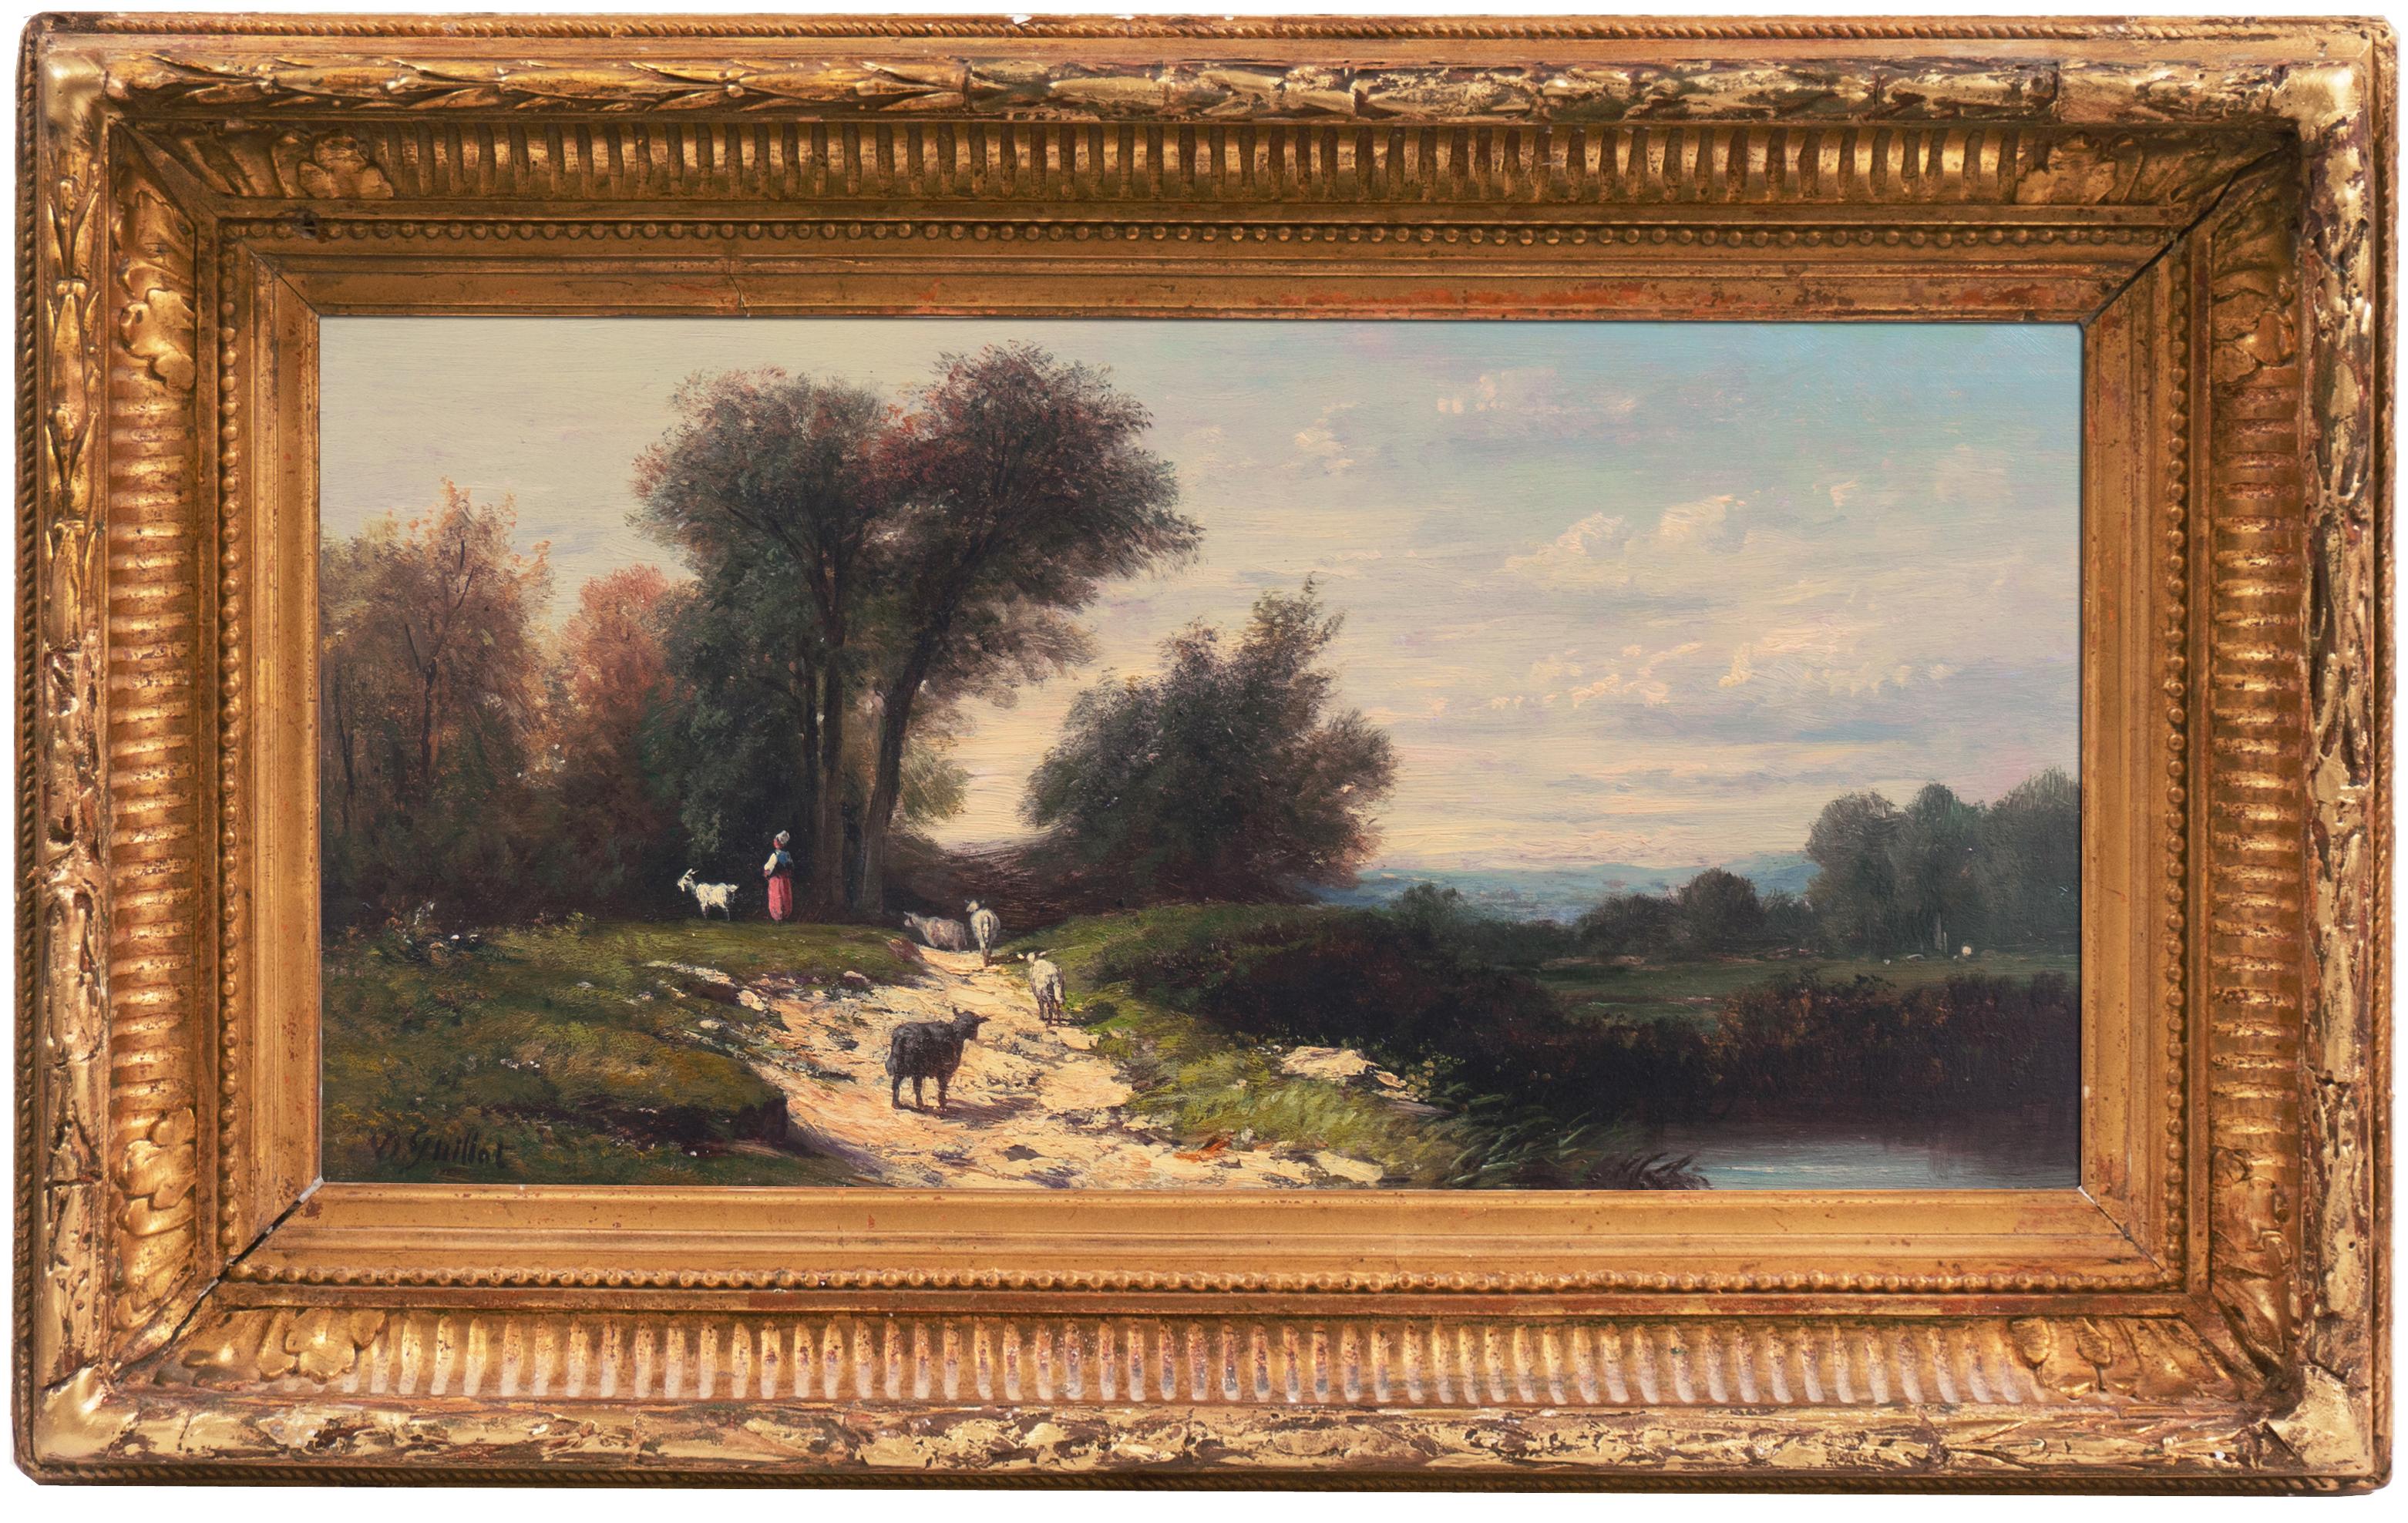 Landscape Painting Donat Guillot - Bergère dans un paysage fluvial" Salon des Artistes Français, Musée Pouchkine